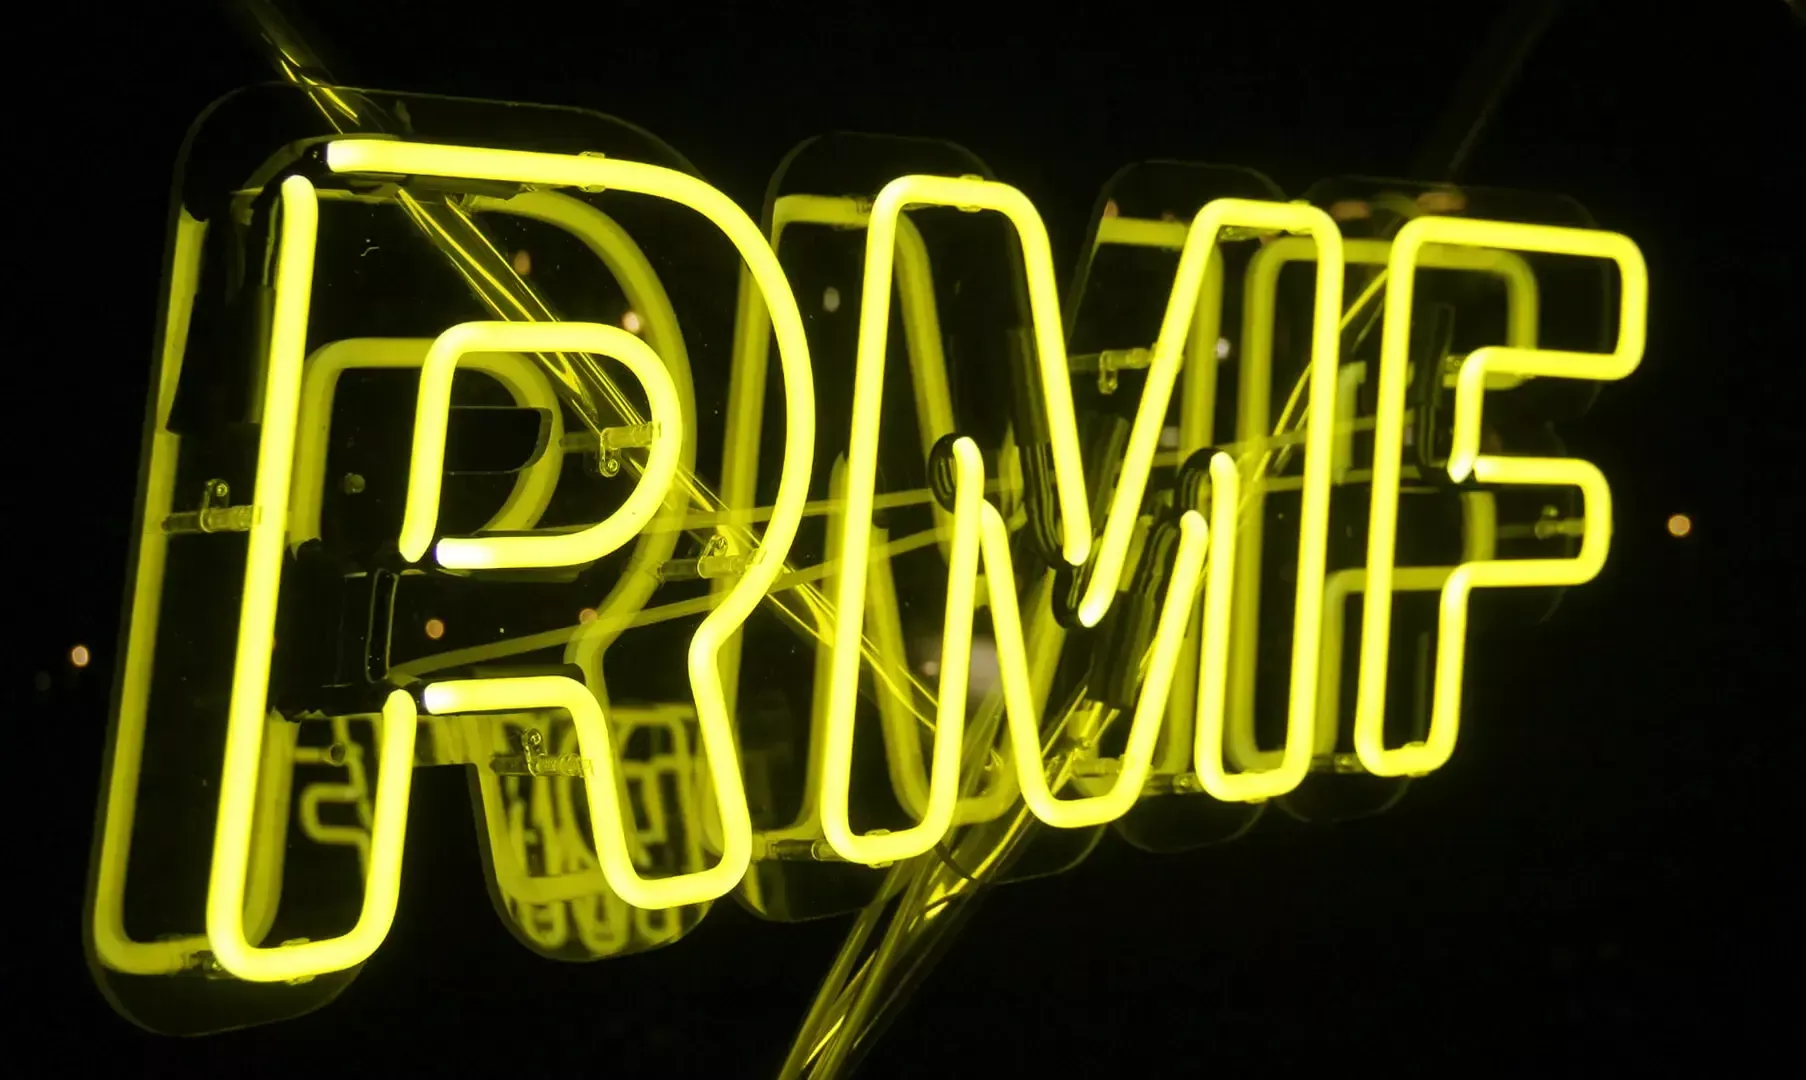 RMF - Geel neon voor Radio RMF, neonreclame.